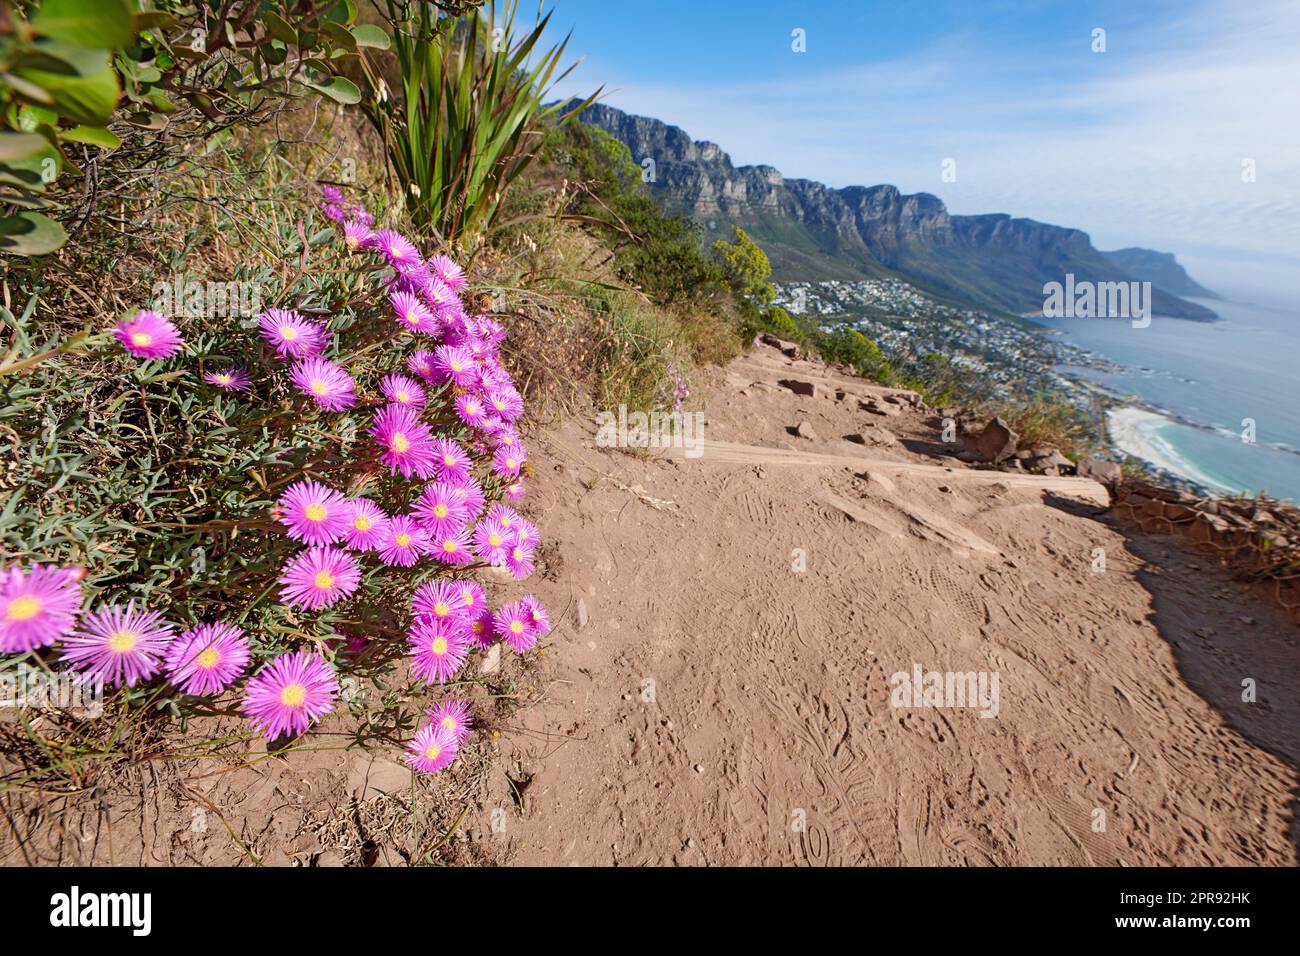 Paysage sauvage de fleurs de lampranthus spectabilis croissant sur une falaise au bord de la mer avec des sentiers de randonnée à explorer. Copier l'espace avec la côte pittoresque et la pente de montagne avec un fond ciel bleu ciel nuageux Banque D'Images